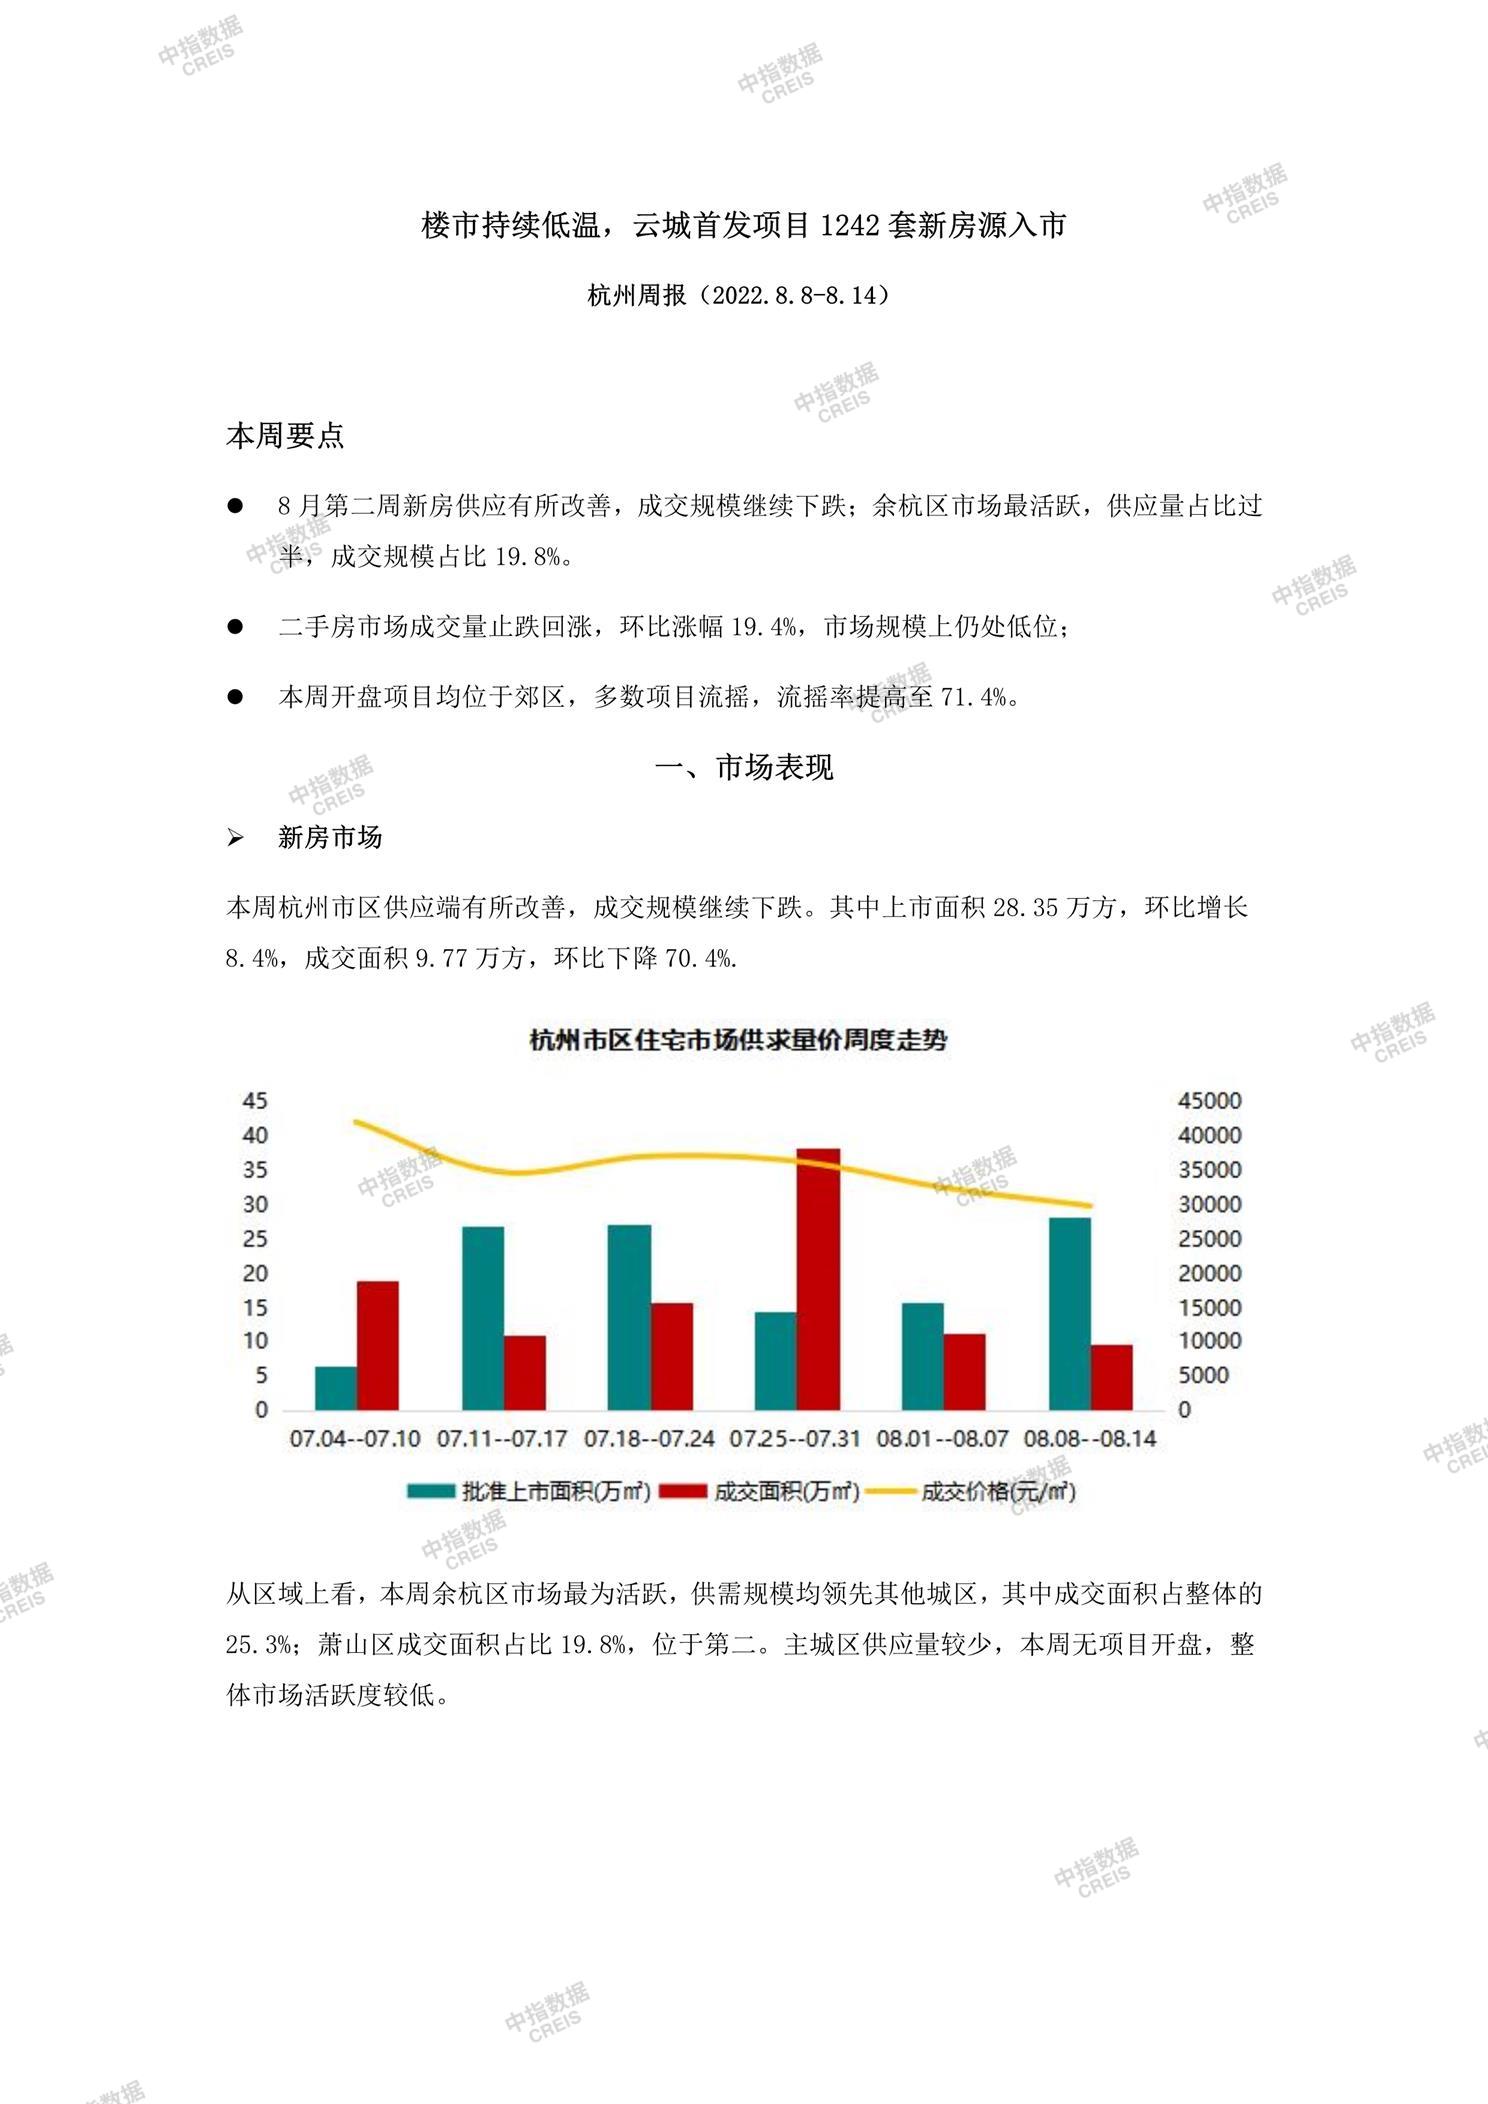 杭州、杭州房地产市场、商品房销售、住宅成交、土地市场、地块面积、杭州写字楼